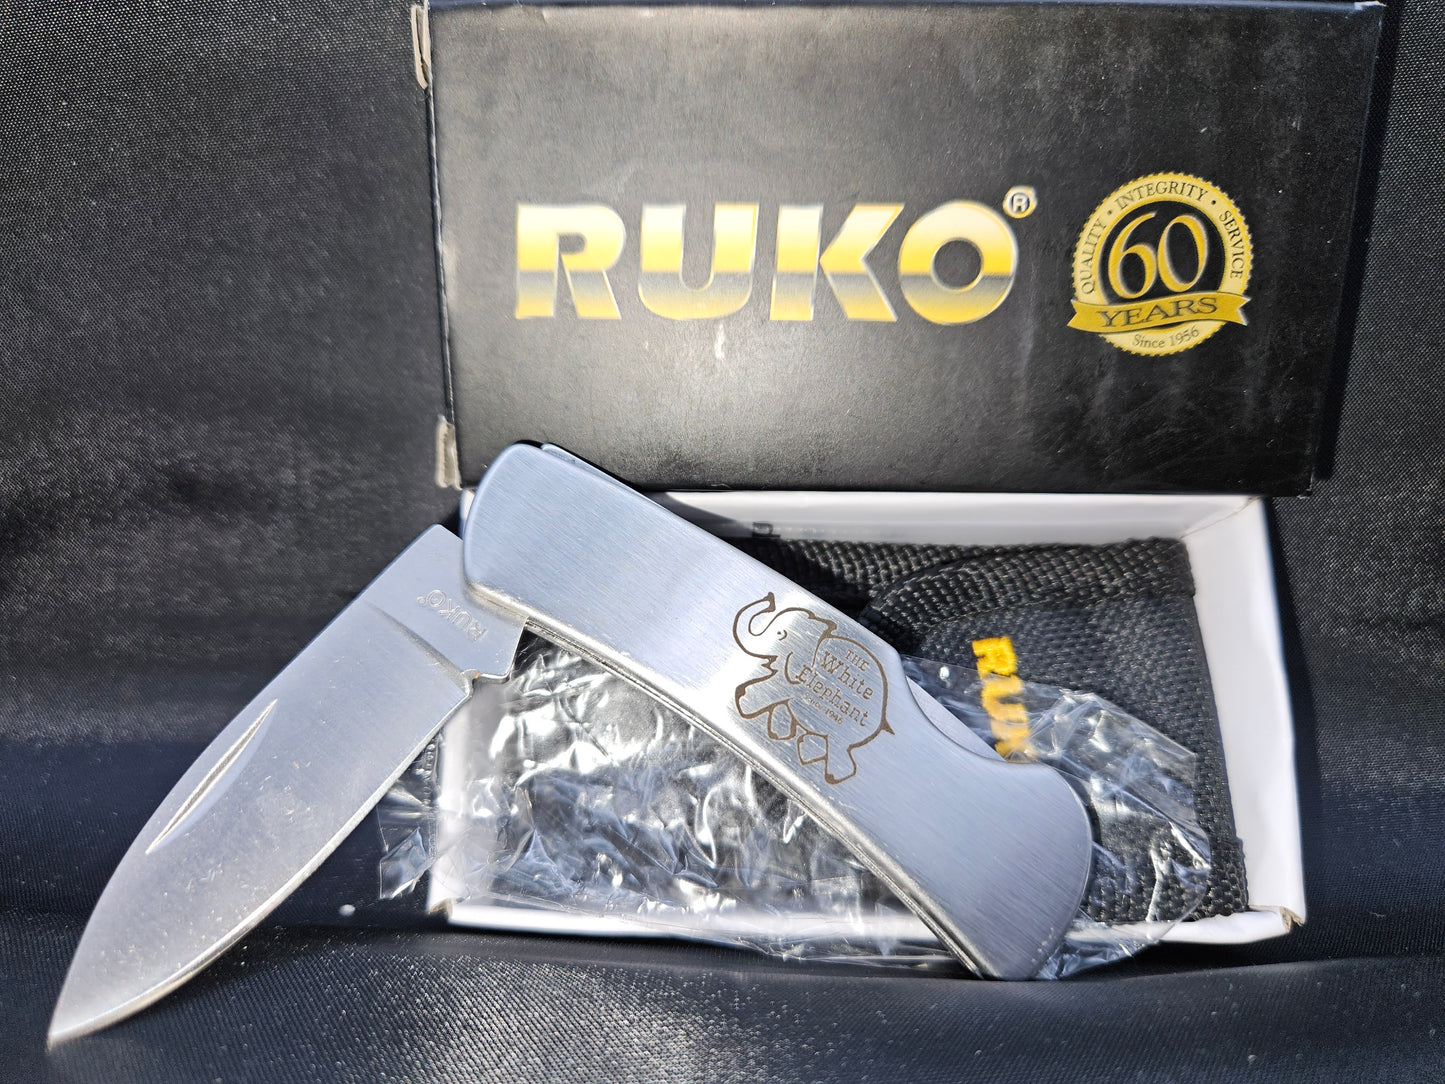 White Elephant Ruko folding pocket knife